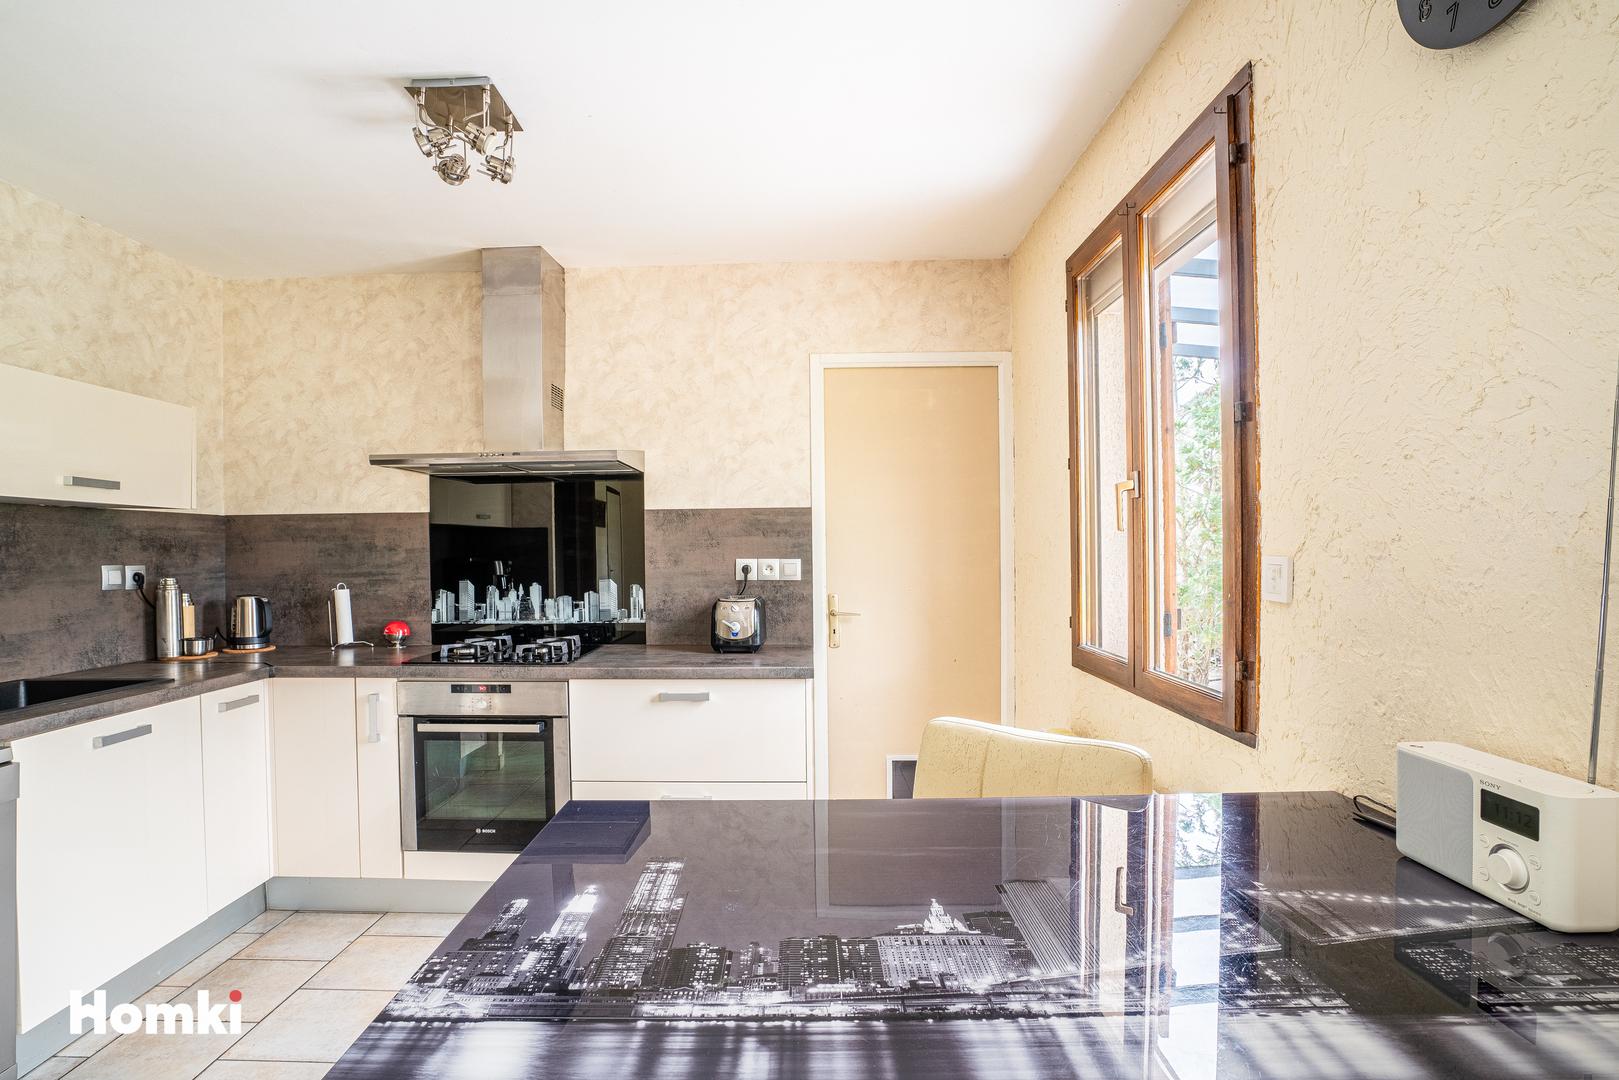 Homki - Vente Maison/villa  de 102.0 m² à Fleury-les-Aubrais 45400